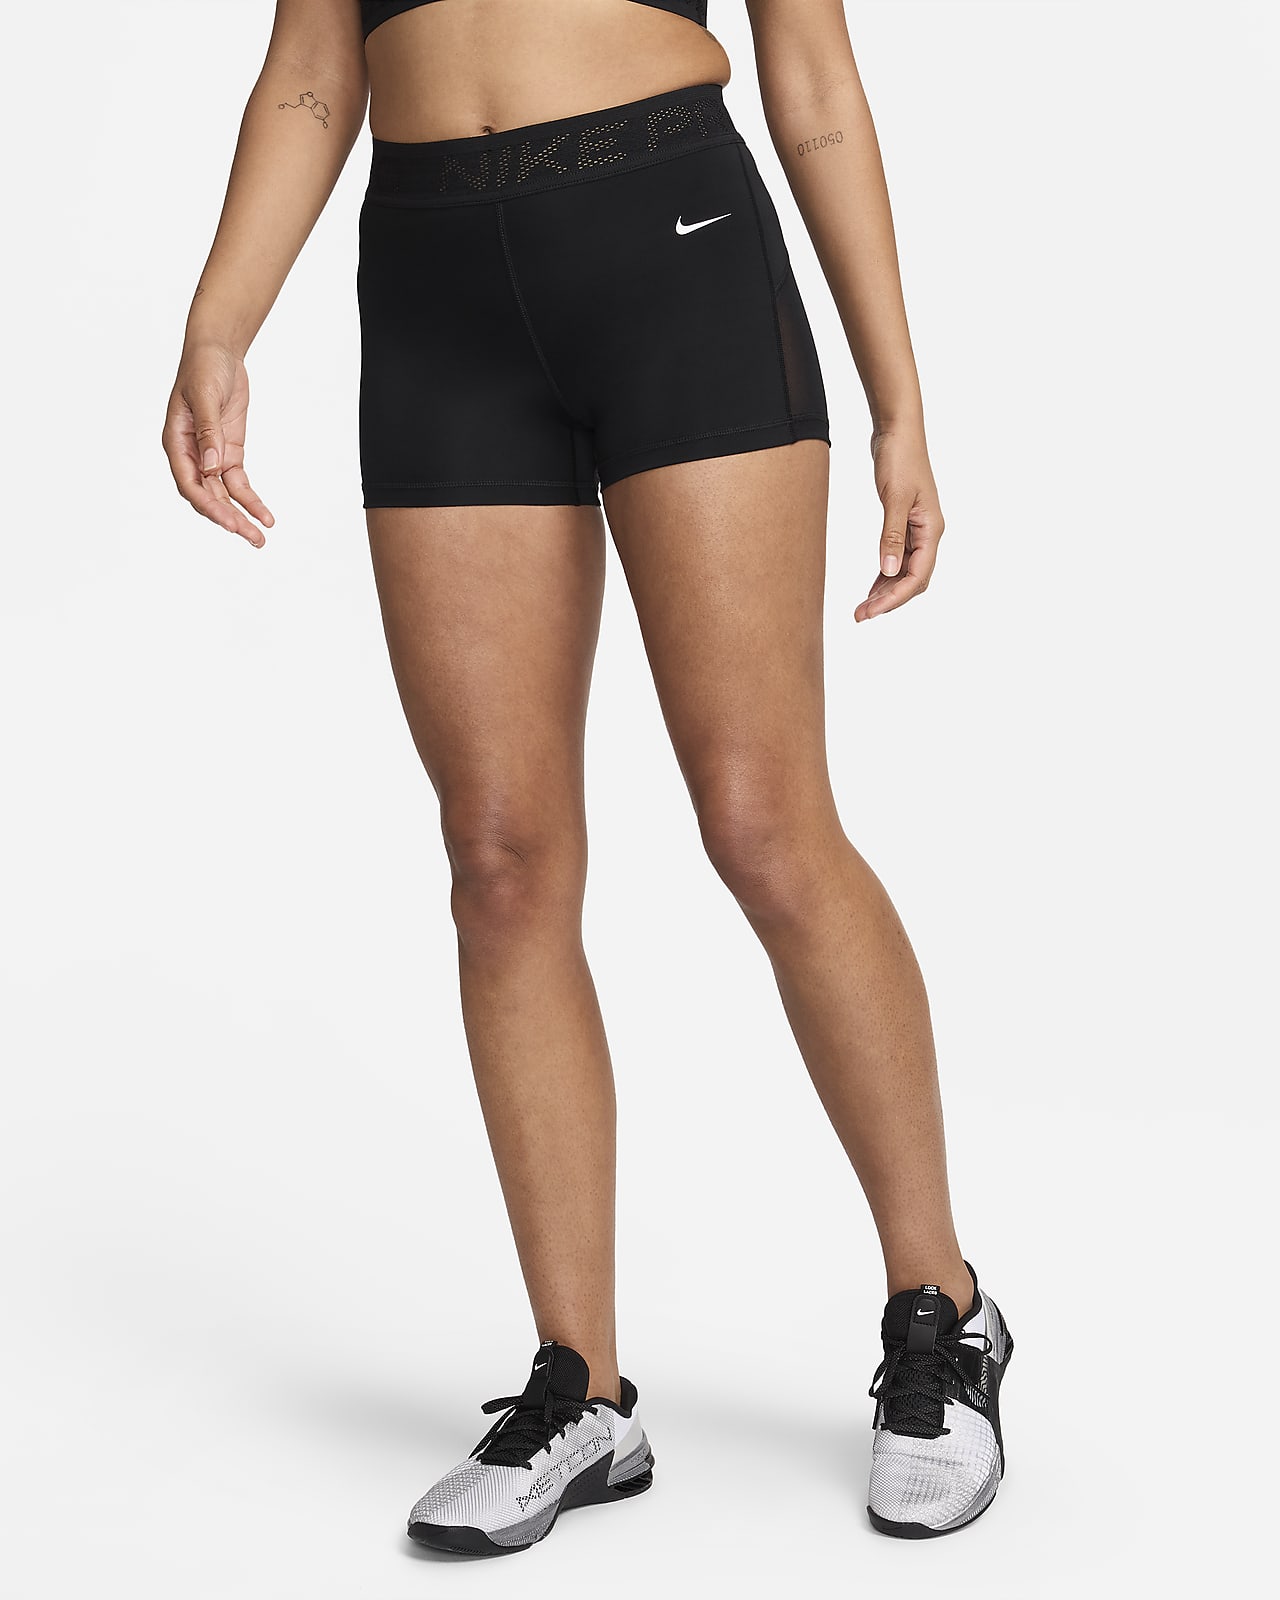 Shorts con paneles de malla de tiro medio de 8 cm para mujer Nike Pro